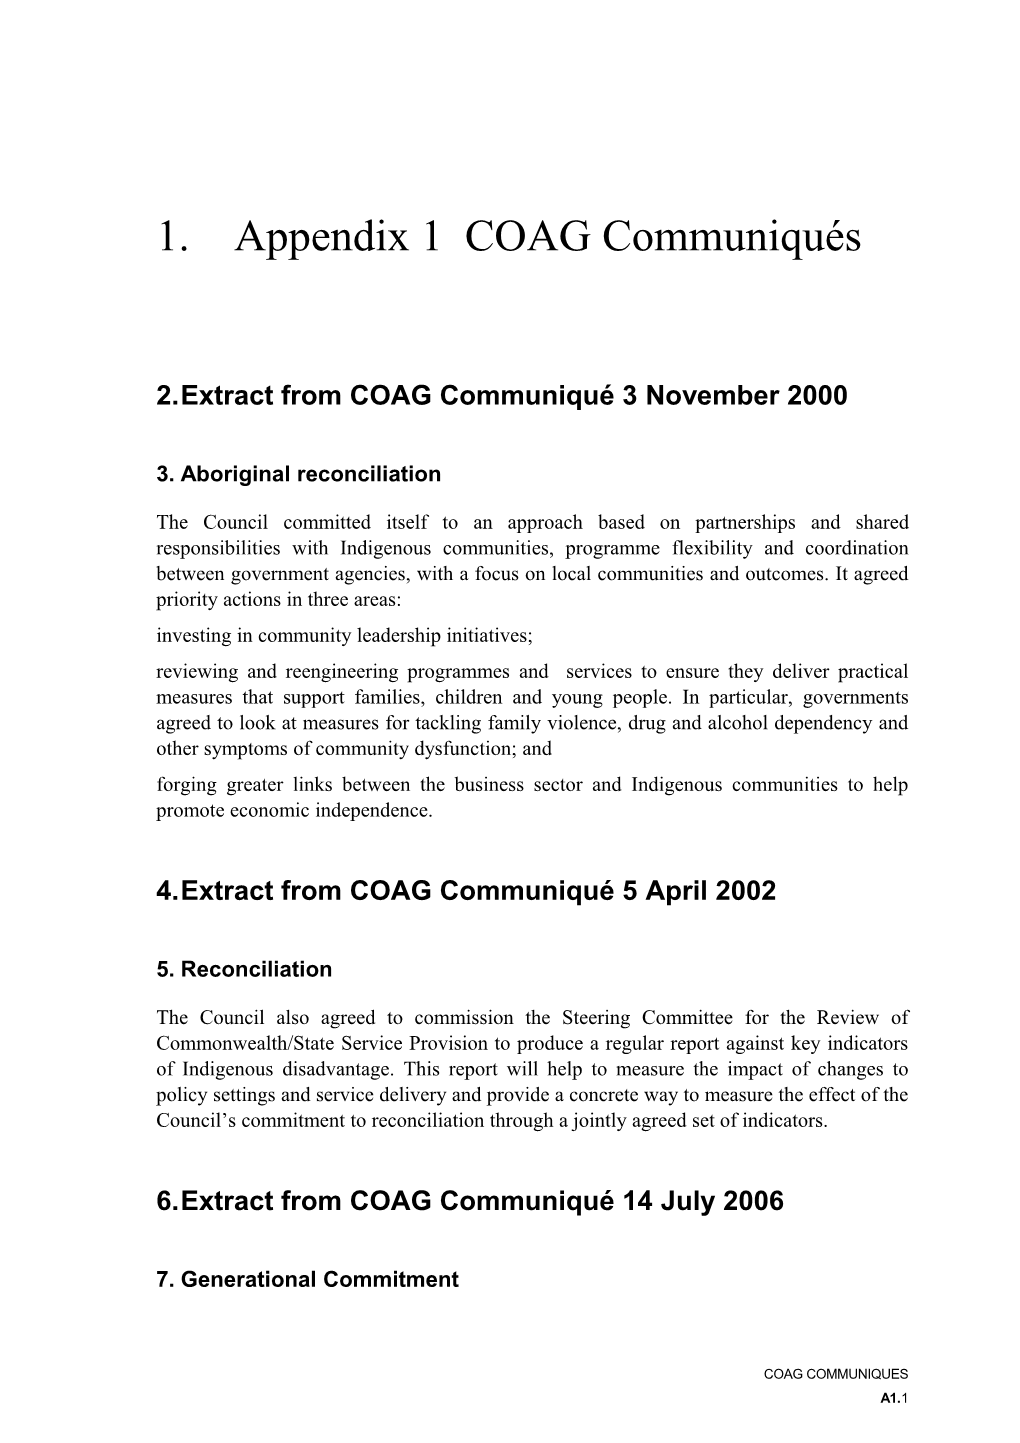 Appendix 1 - COAG Communiques - Overcoming Indigenous Disadvantage 2016